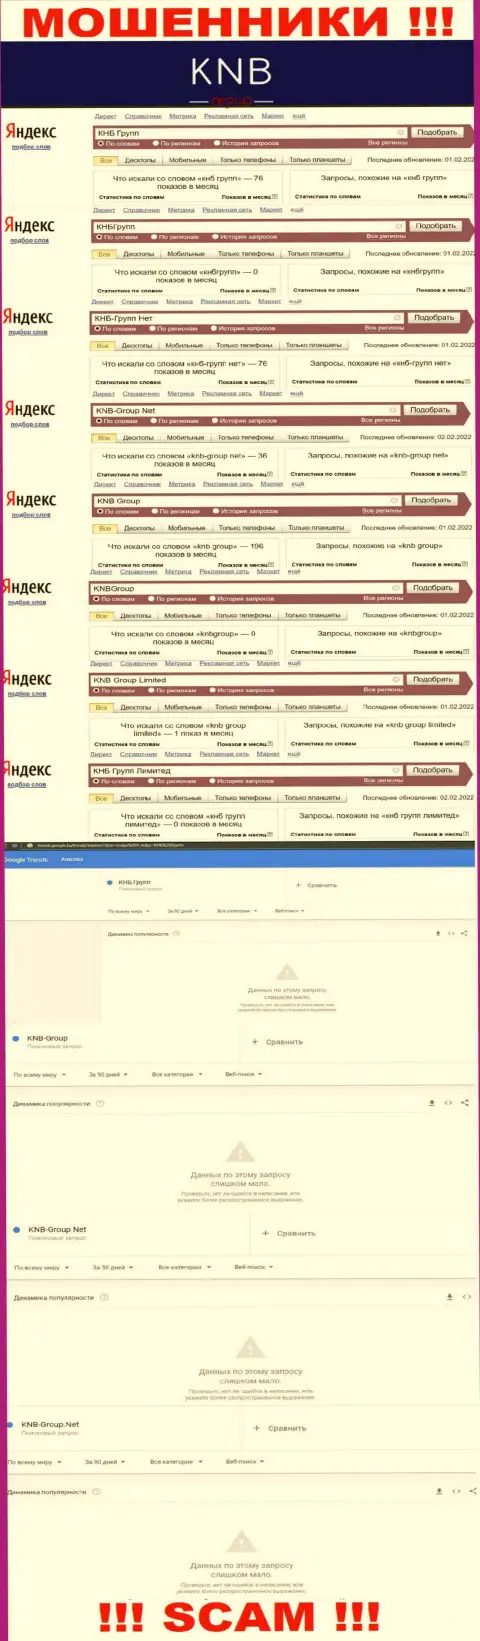 Скриншот результата online запросов по преступно действующей конторе KNB Group